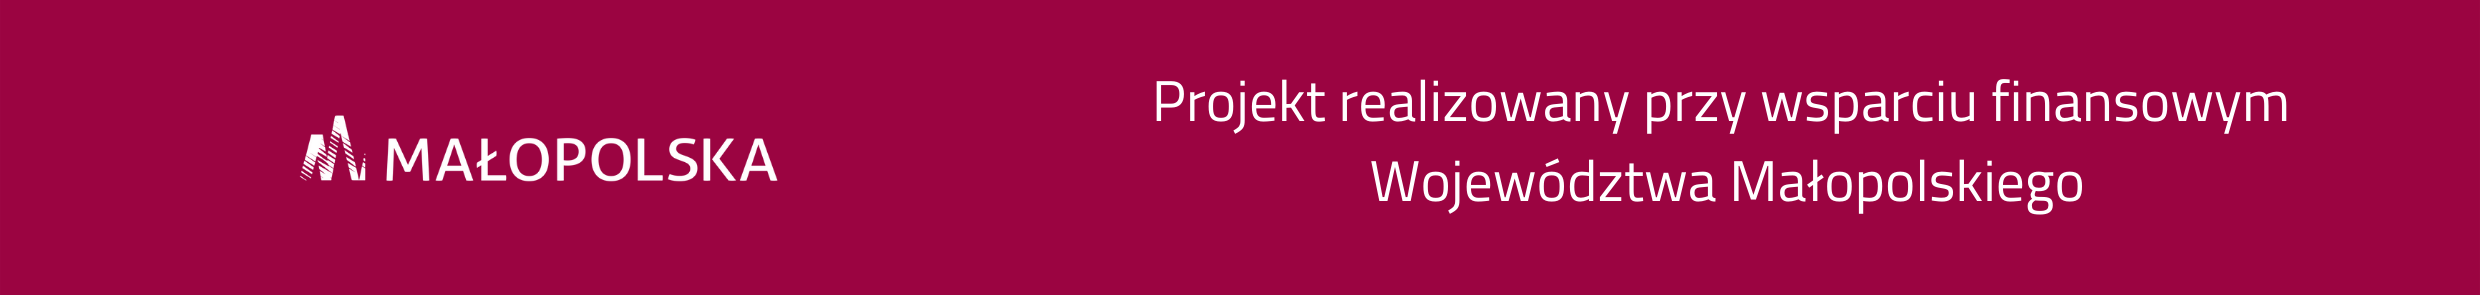 Belka projektowa z logiem Województwa Małopolskiego i tekstem Projekt realizowany przy wsparciu finansowym Województwa Małopolskiego